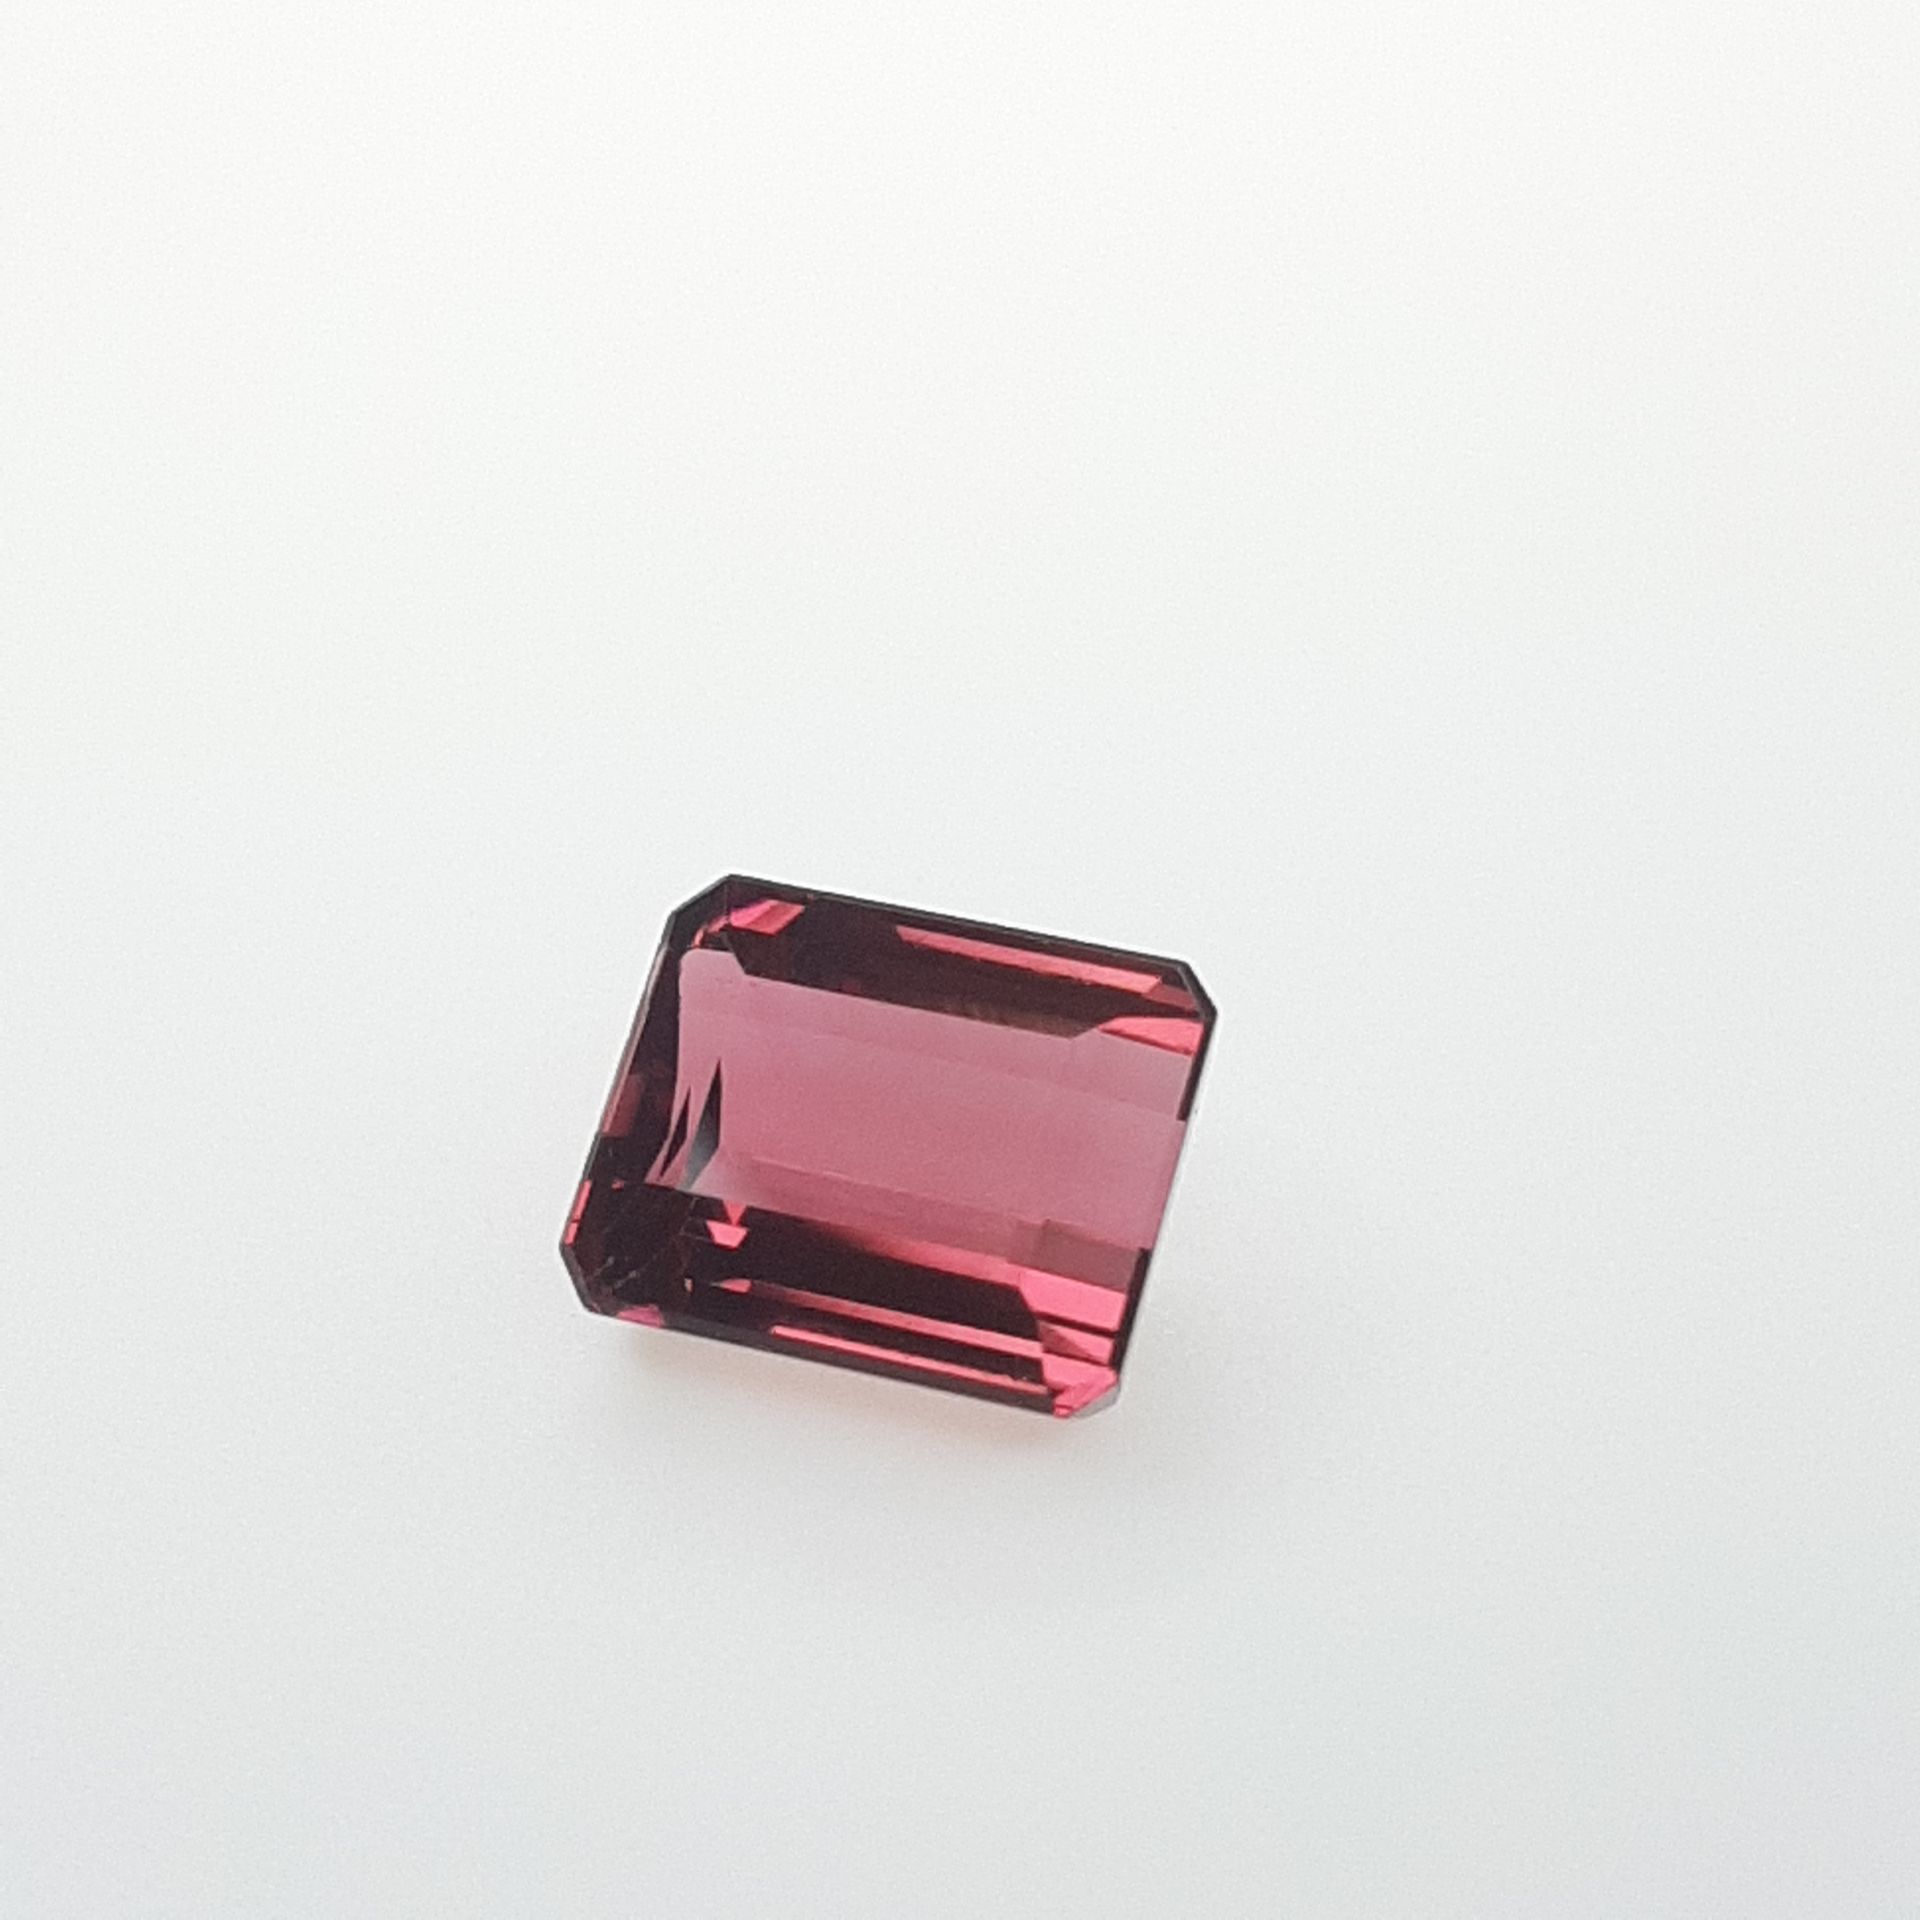 Rubellite - BRESIL - 5.90 cts RUBELITA - De Brasil - Color rojo rosado - Tamaño &hellip;